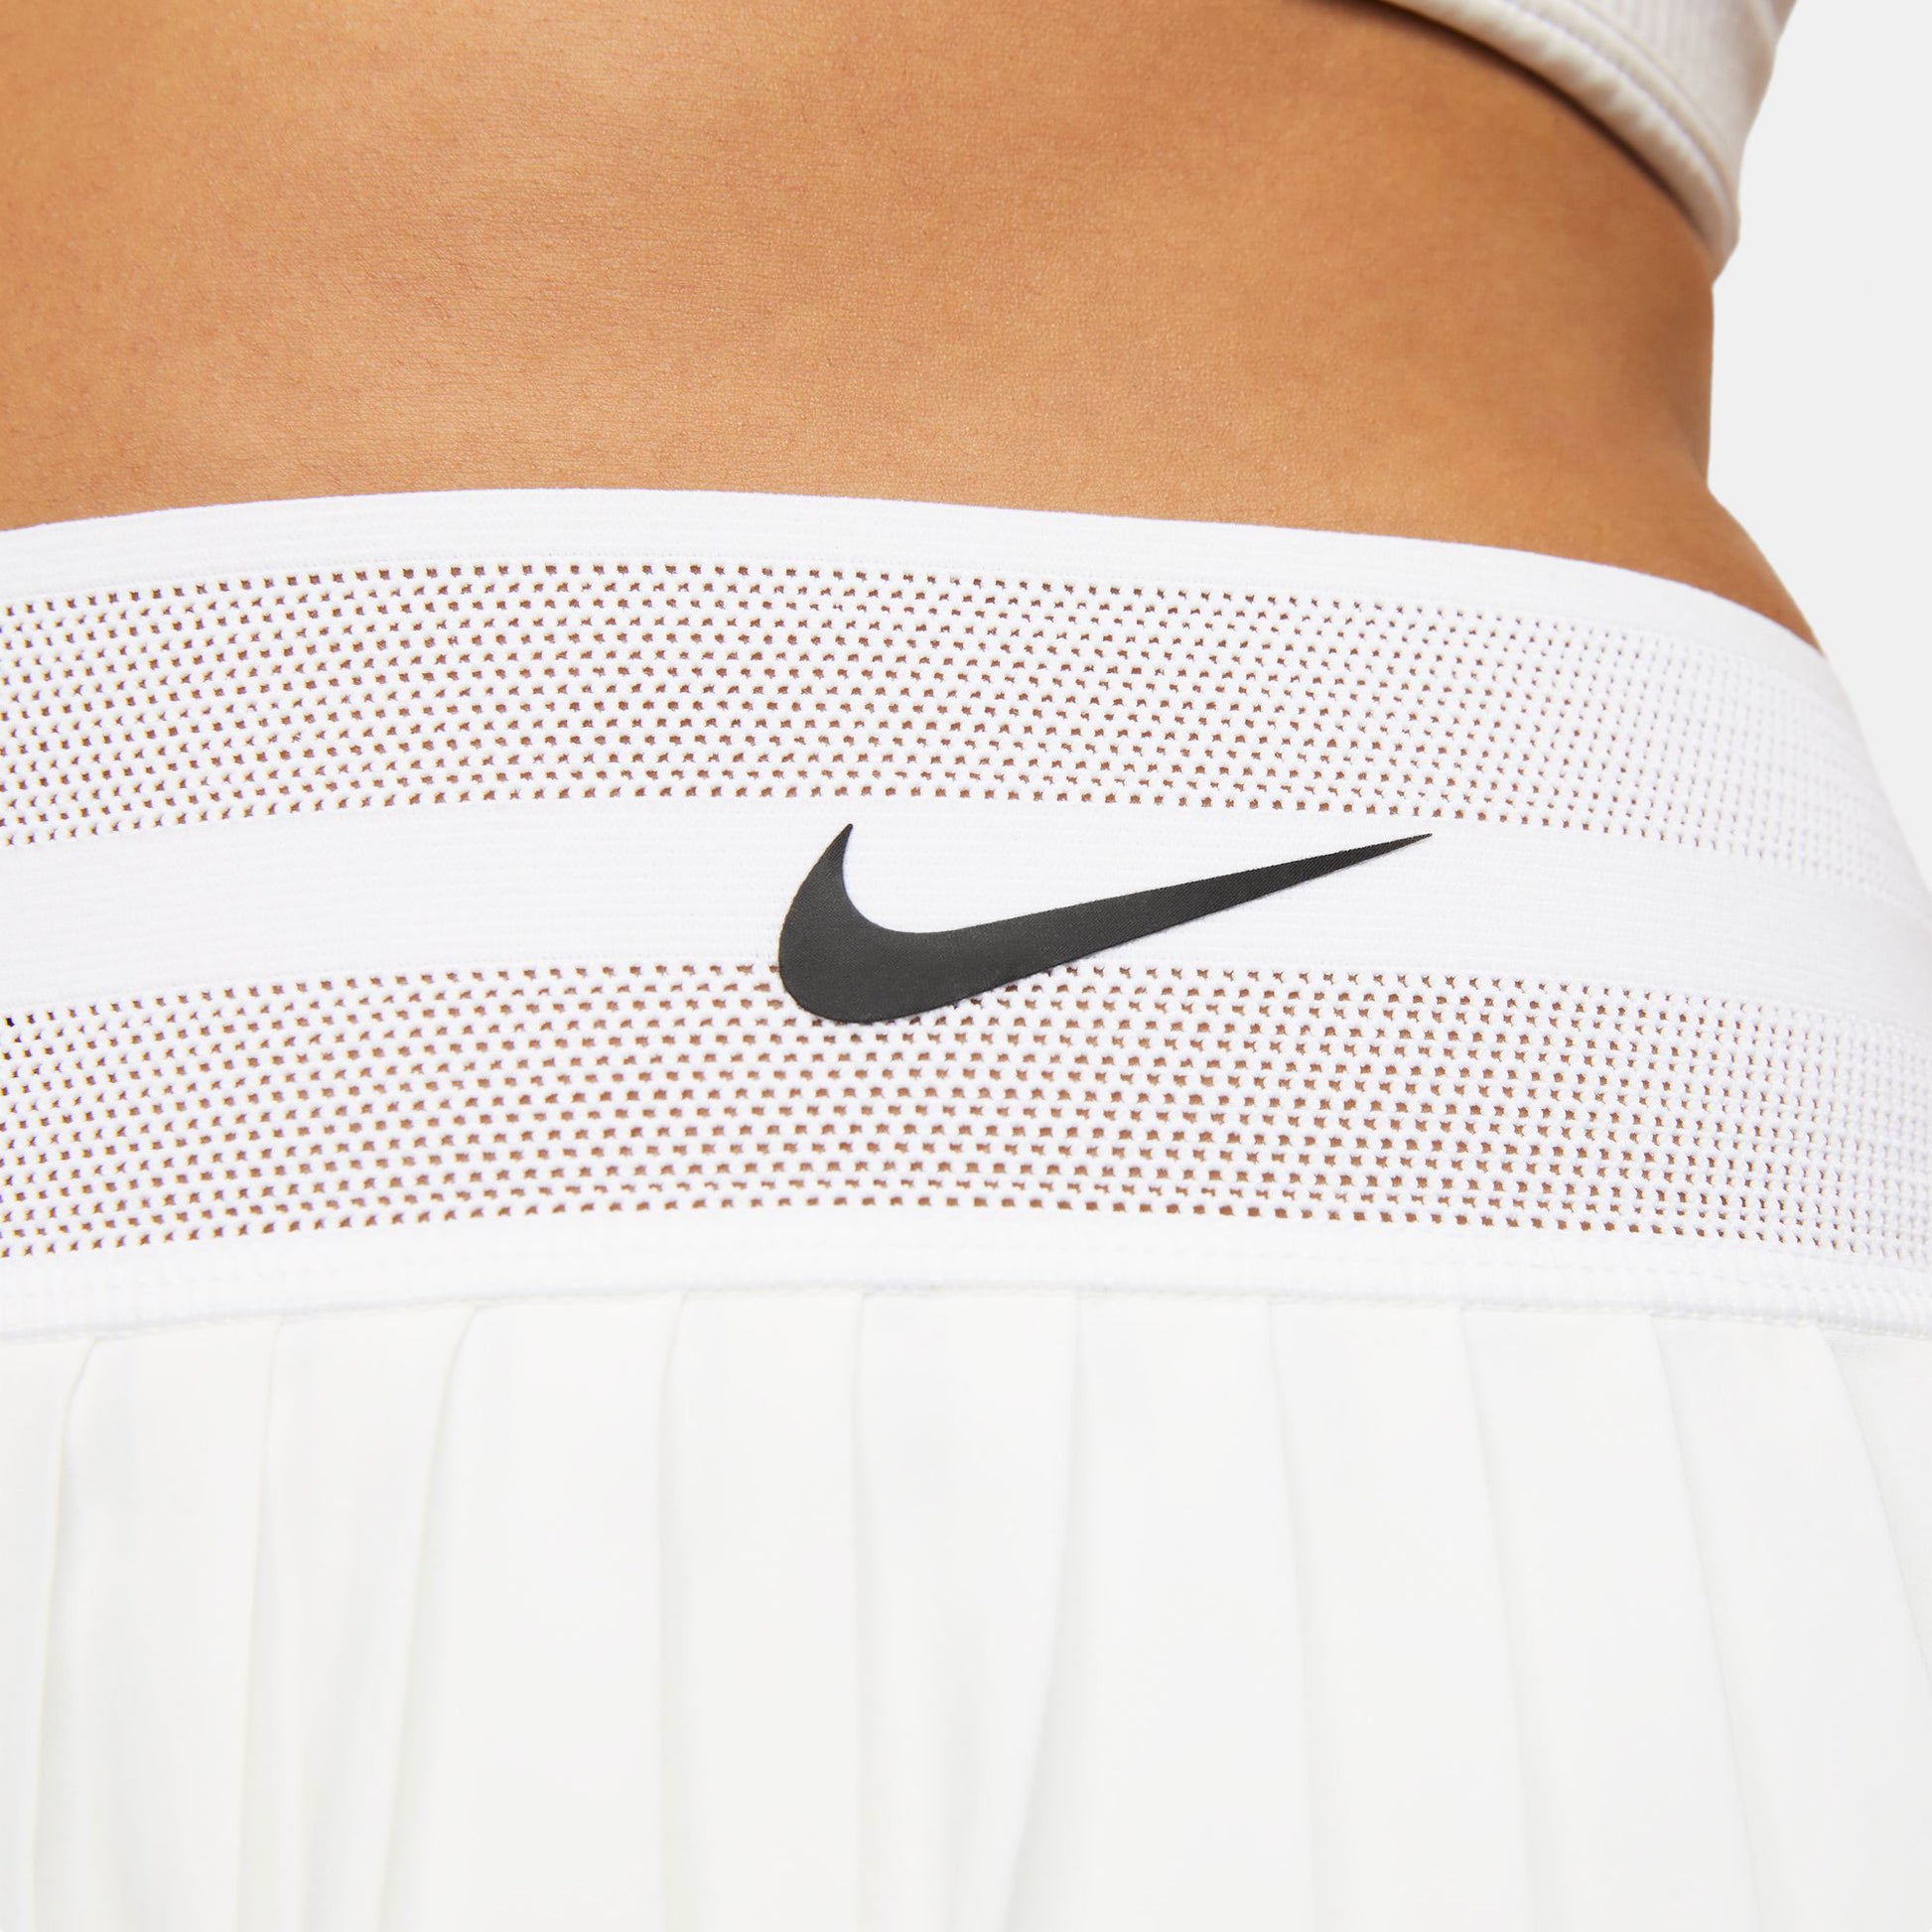 NikeCourt Dri-FIT Slam London Women's Tennis Skirt White (4)